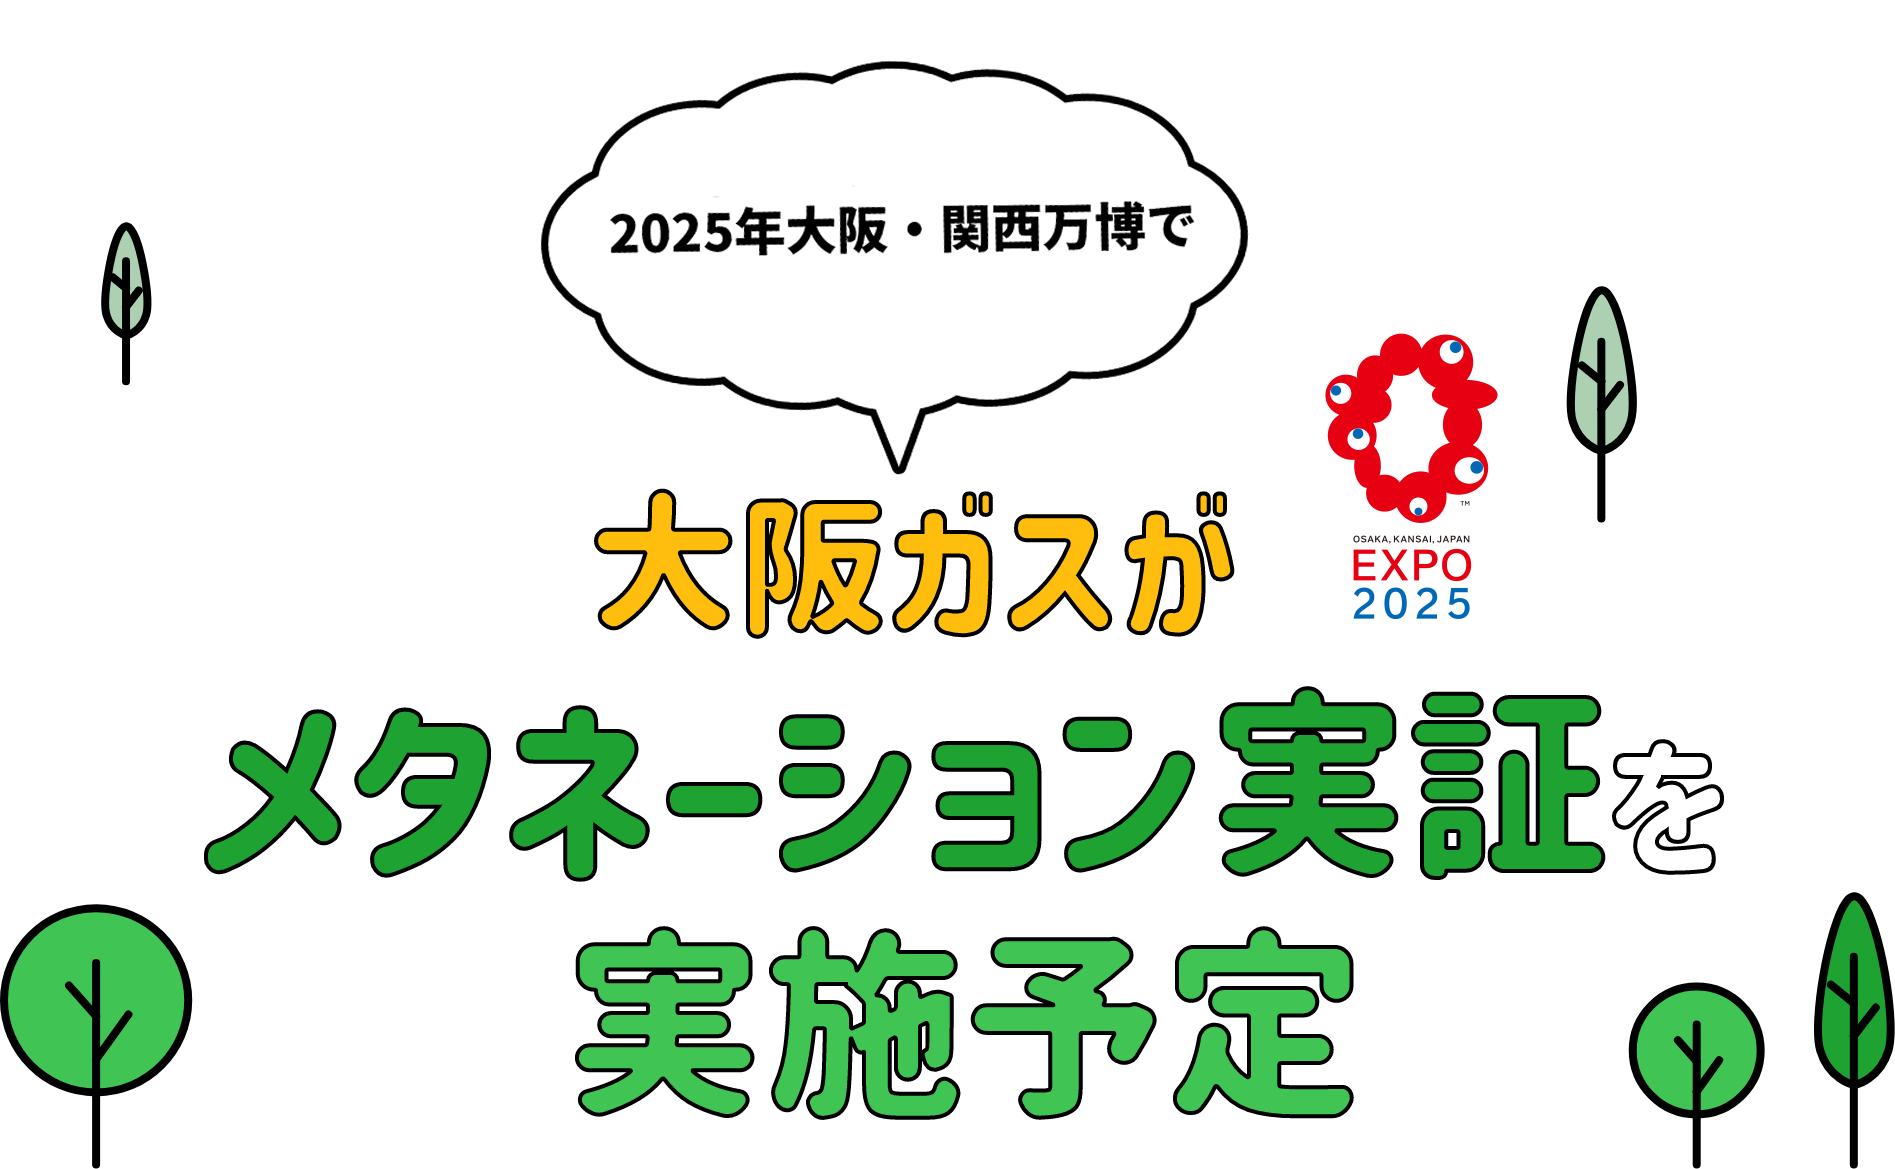 2024・2025年度 大阪・関西万博で大阪ガスがメタネーション実証を実施予定